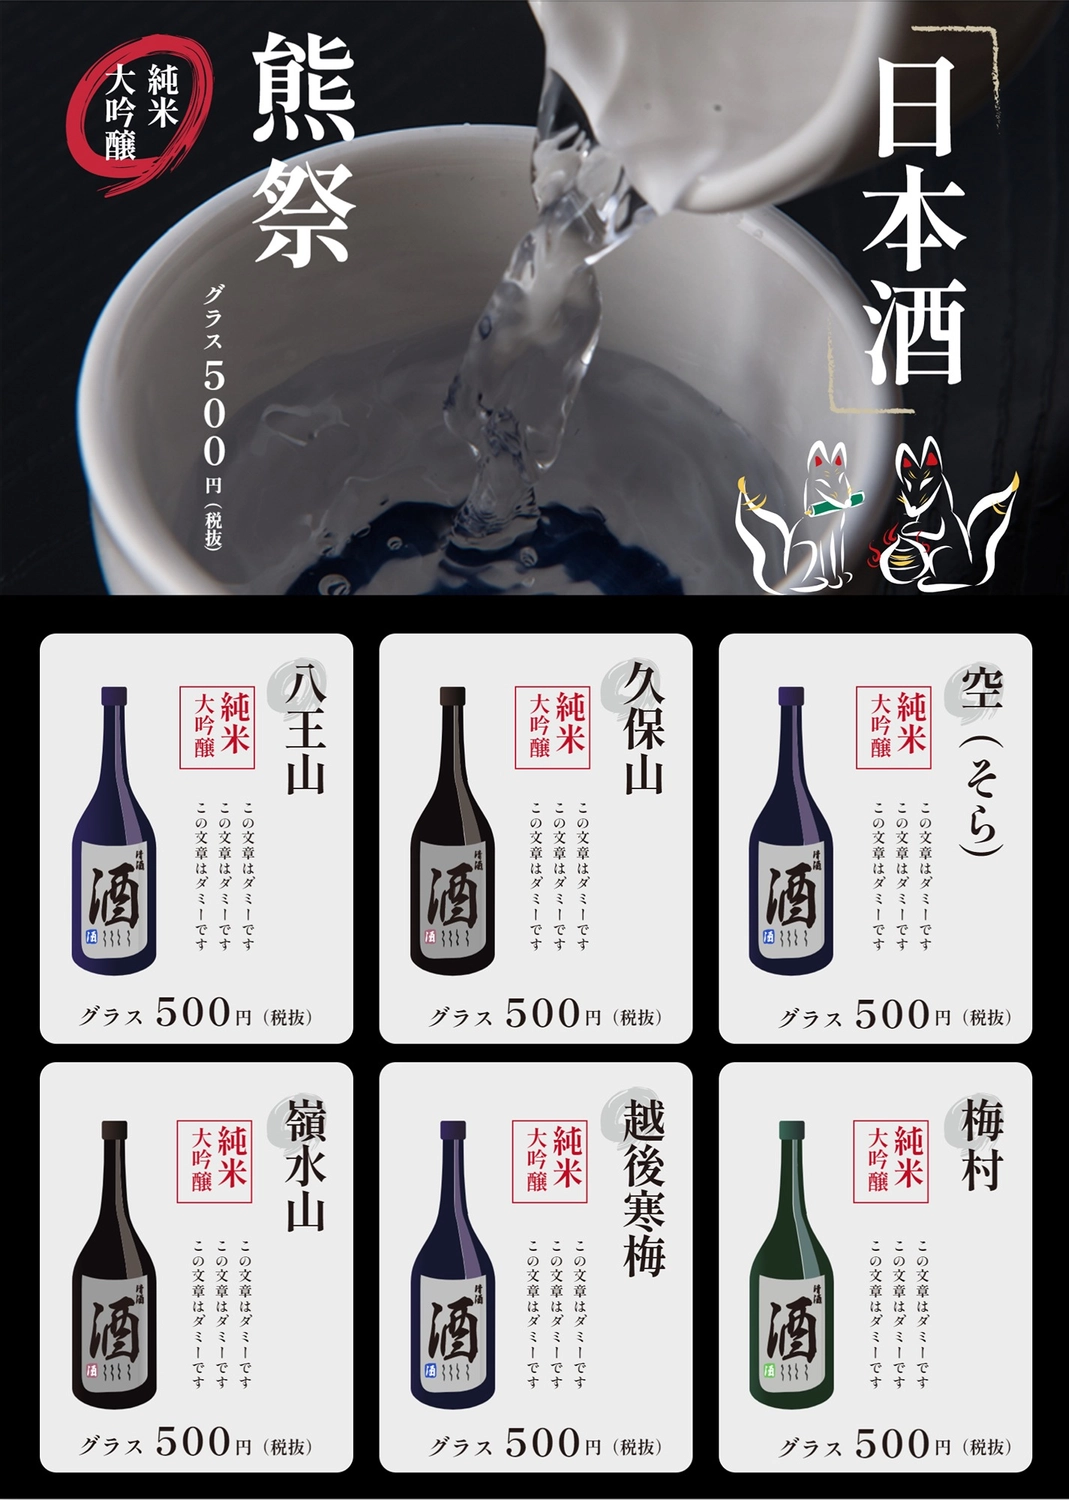 日本酒のメニュー, quán ba, giản dị, và, Thực đơn mẫu